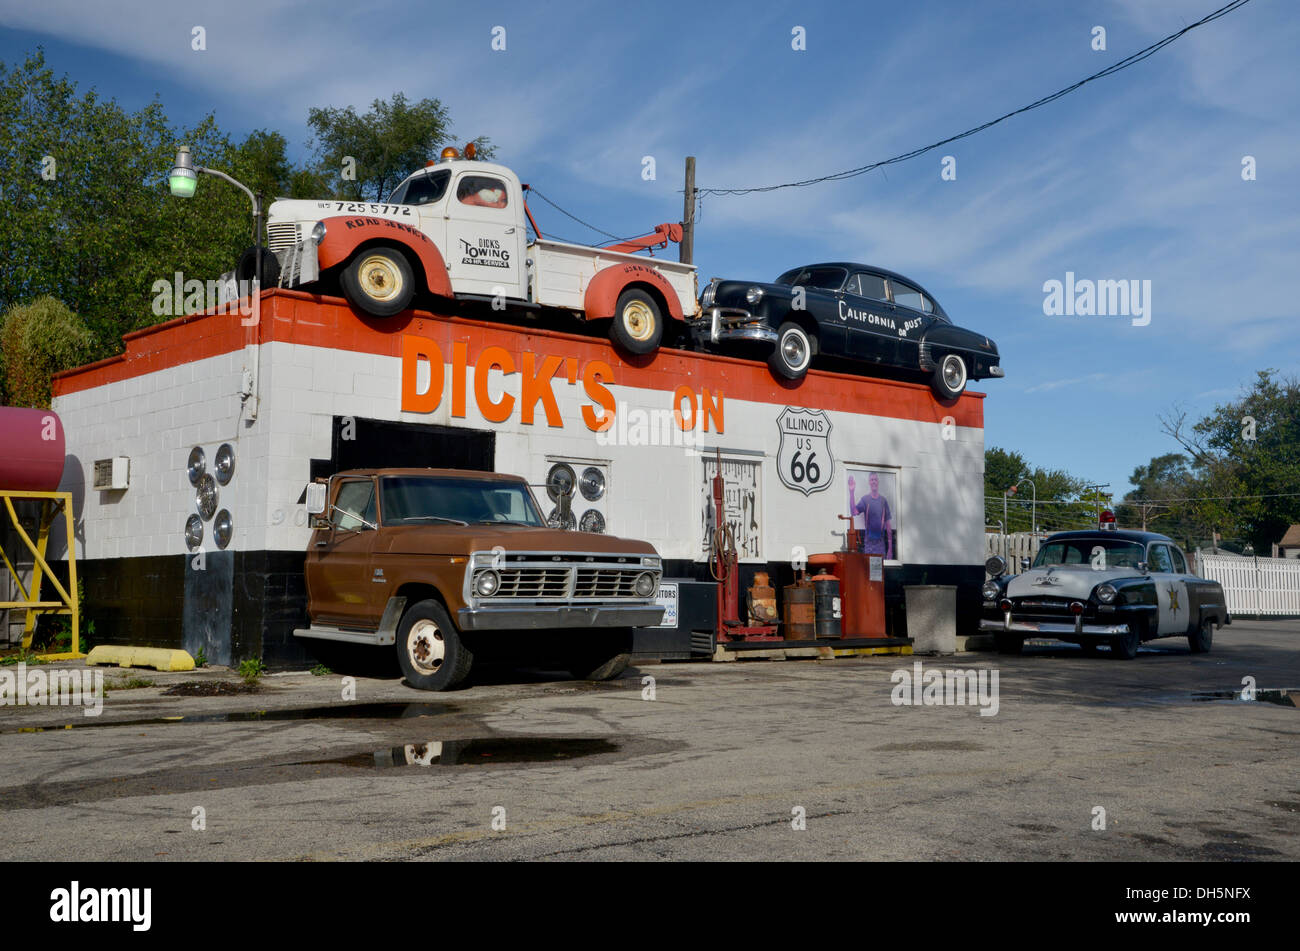 Dick's sur 66 - de vieilles voitures dans un garage à Joliet sur la route 66 en Illinois Banque D'Images